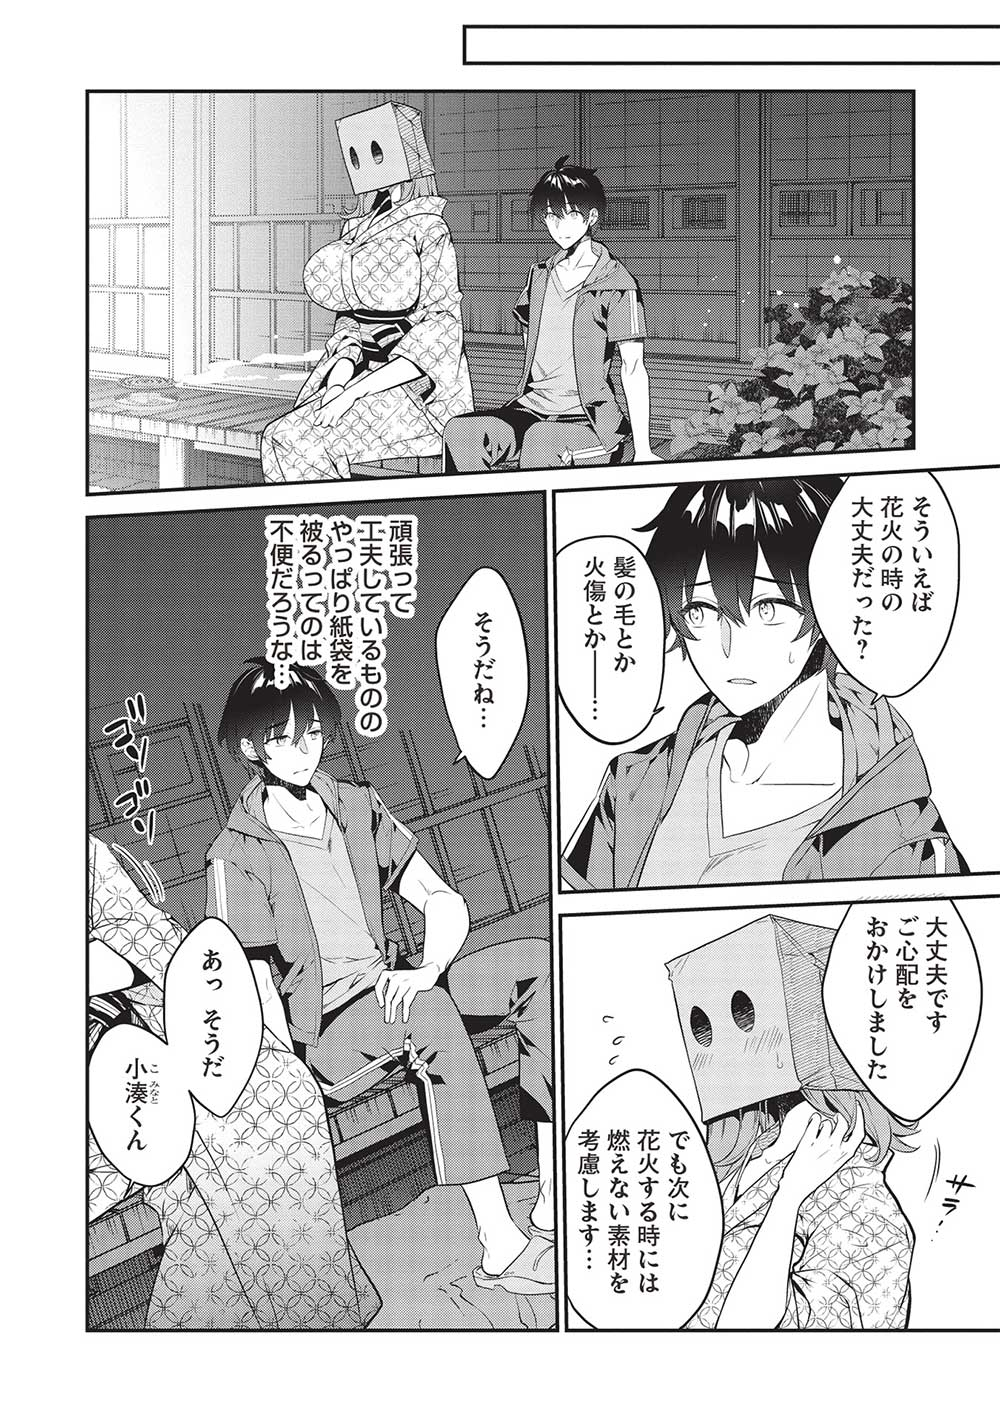 Kamiyama-san No Kami Bukuro No Naka Ni Wa - Chapter 17 - Page 2